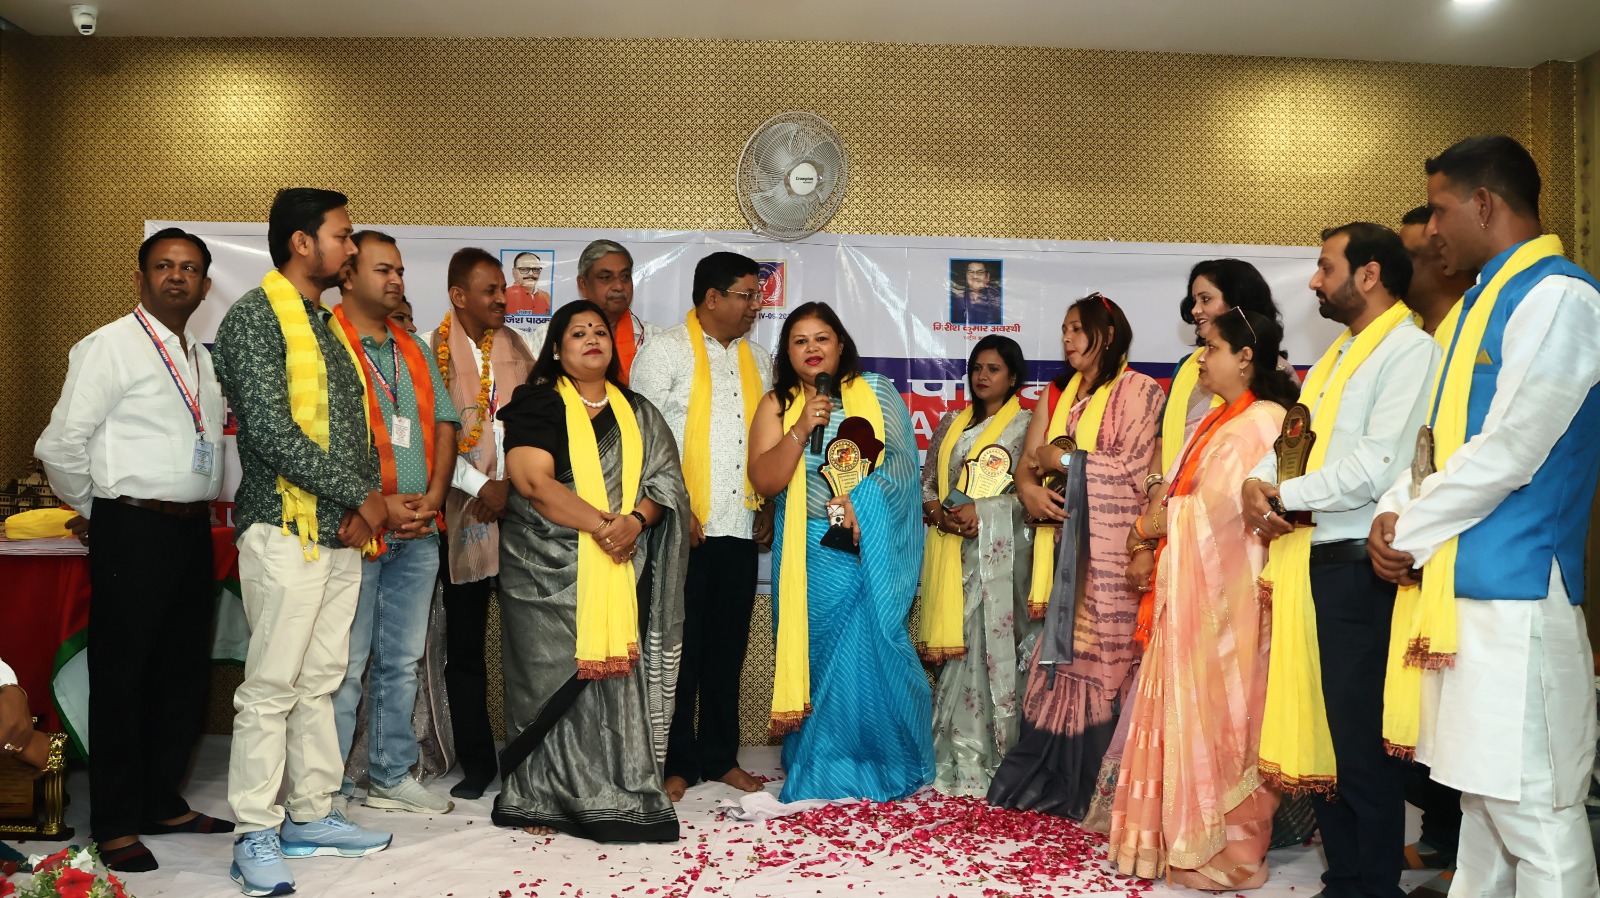 भारतीय मानवाधिकार परिवार ने नव वर्ष पर किया गोष्ठी का आयोजन